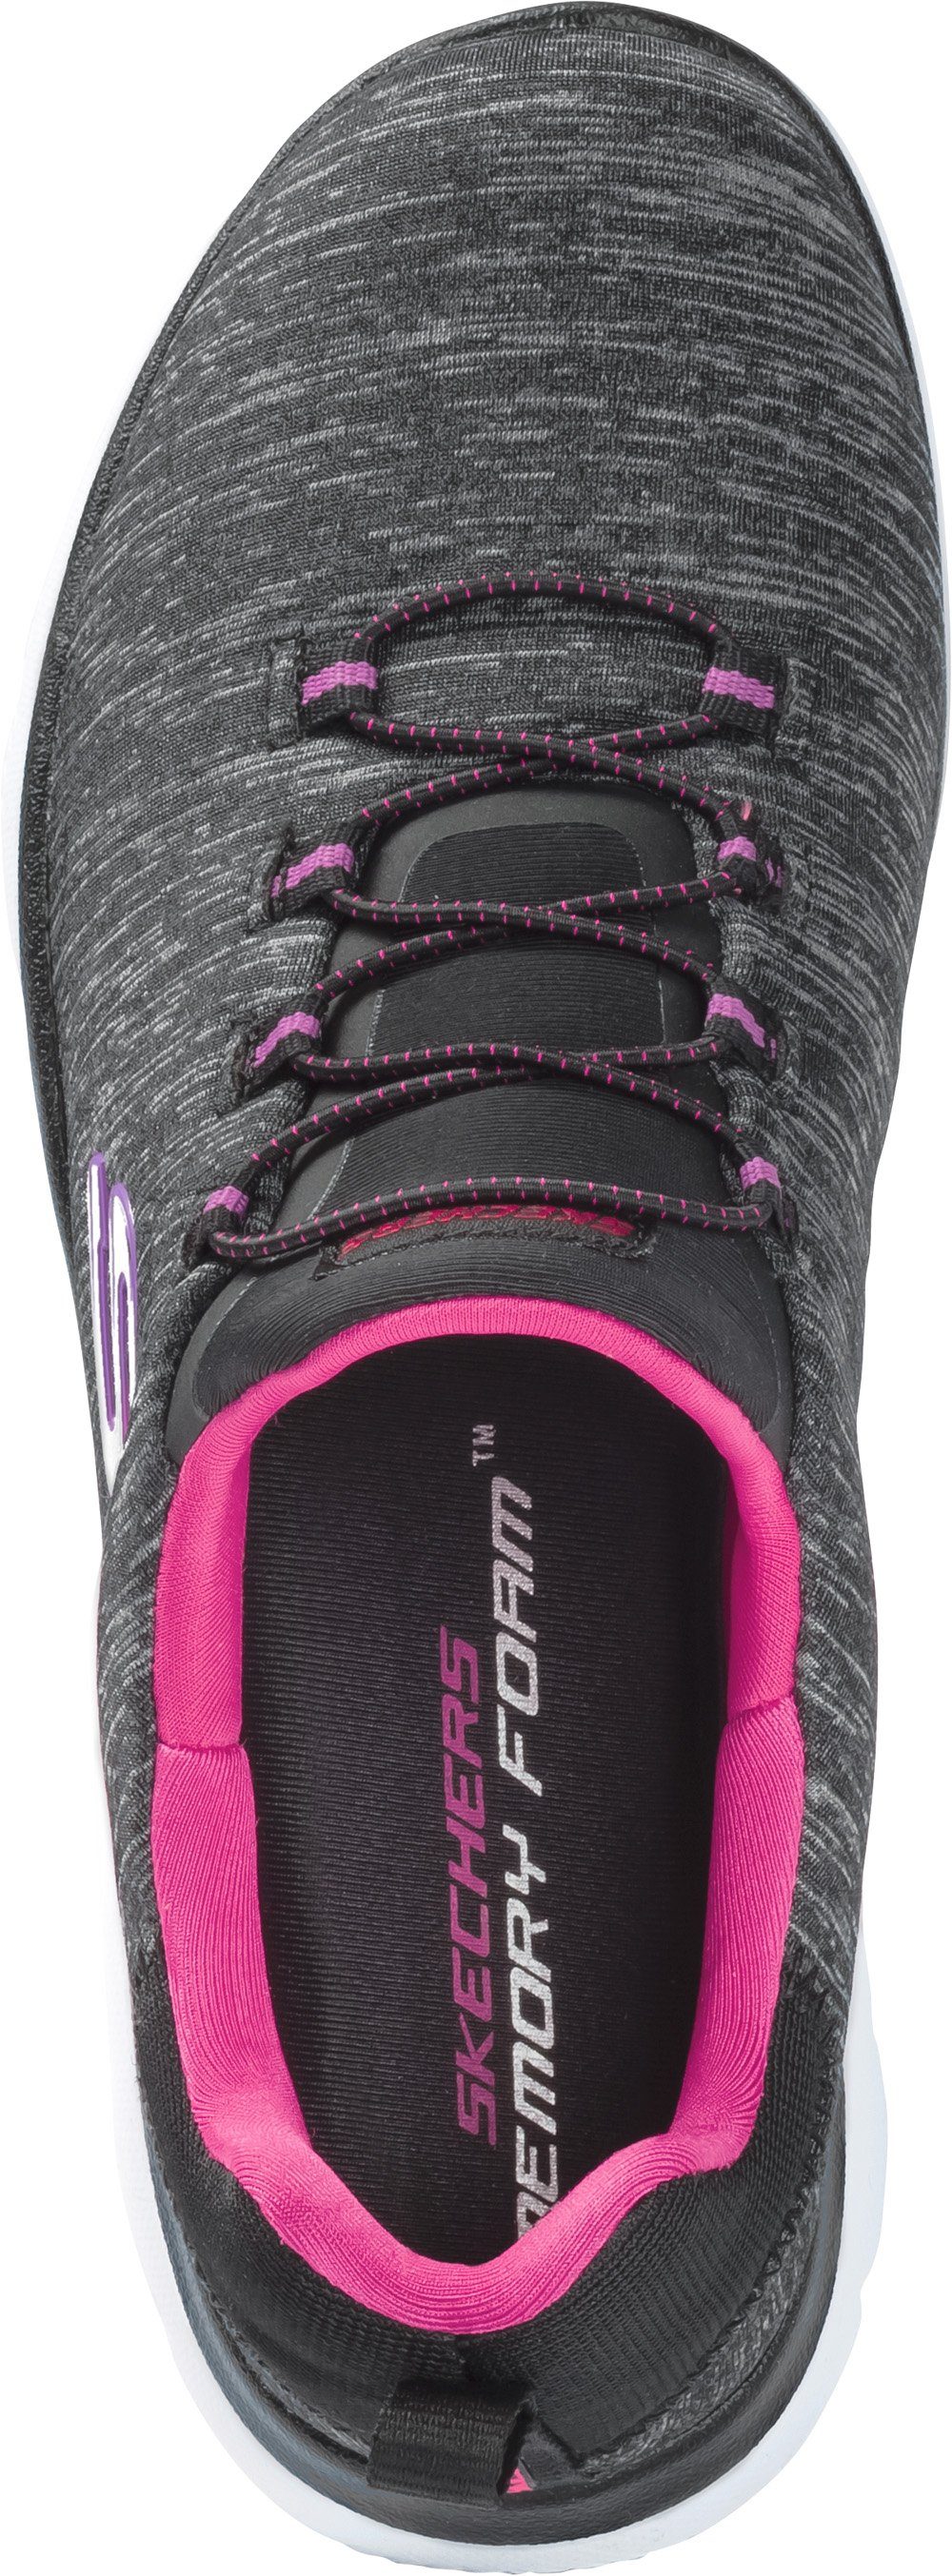 Sneaker Komfort schwarz Slip-On dämpfender mit Einlegesohle Memory-Foam Skechers ultimativer